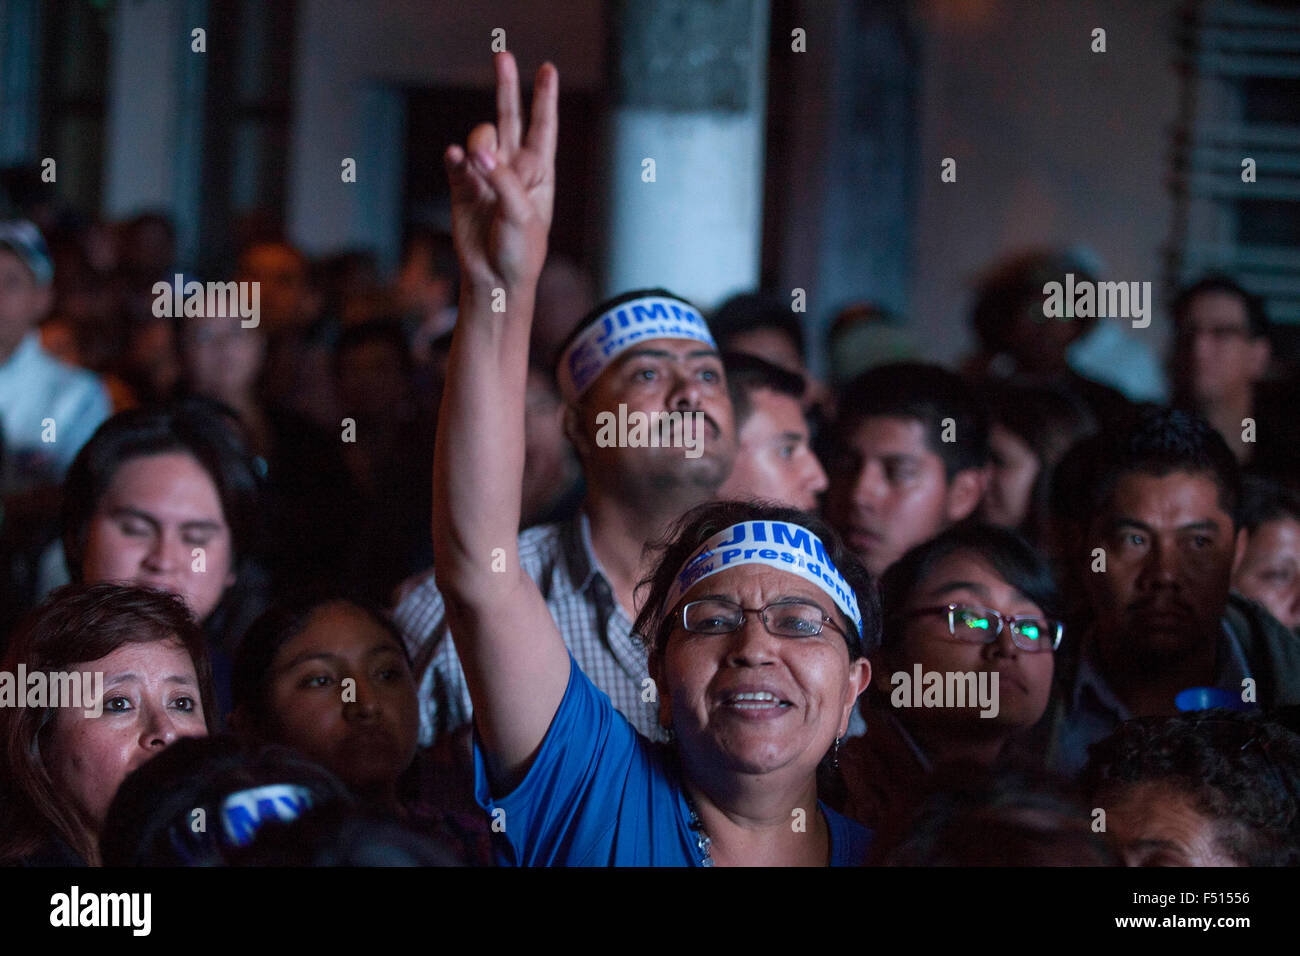 (151026) - GUATEMALA-Stadt, 26. Oktober 2015 (Xinhua)--Anhänger des Front National Konvergenz (FCN, für seine Abkürzung in spanischer Sprache) vor dem Sitz der Partei in Guatemala-Stadt, Hauptstadt von Guatemala, am 25. Oktober 2015 feiern. Rudy Marlon Pineda, Präsident des obersten Wahlgerichts (TSE, für seine Abkürzung in Spanisch), ausgedrückt in einer Presse-Tagung, dass 87.17 % der Rezeption Beschwerdekammern Stimmen gezählt wurden. Laut der lokalen Presse ist Jimmy Morales, Komiker und Kandidat der rechten Partei nationale Konvergenz Front FCN (für seine Abkürzung in spanischer Sprache), die virt Stockfoto